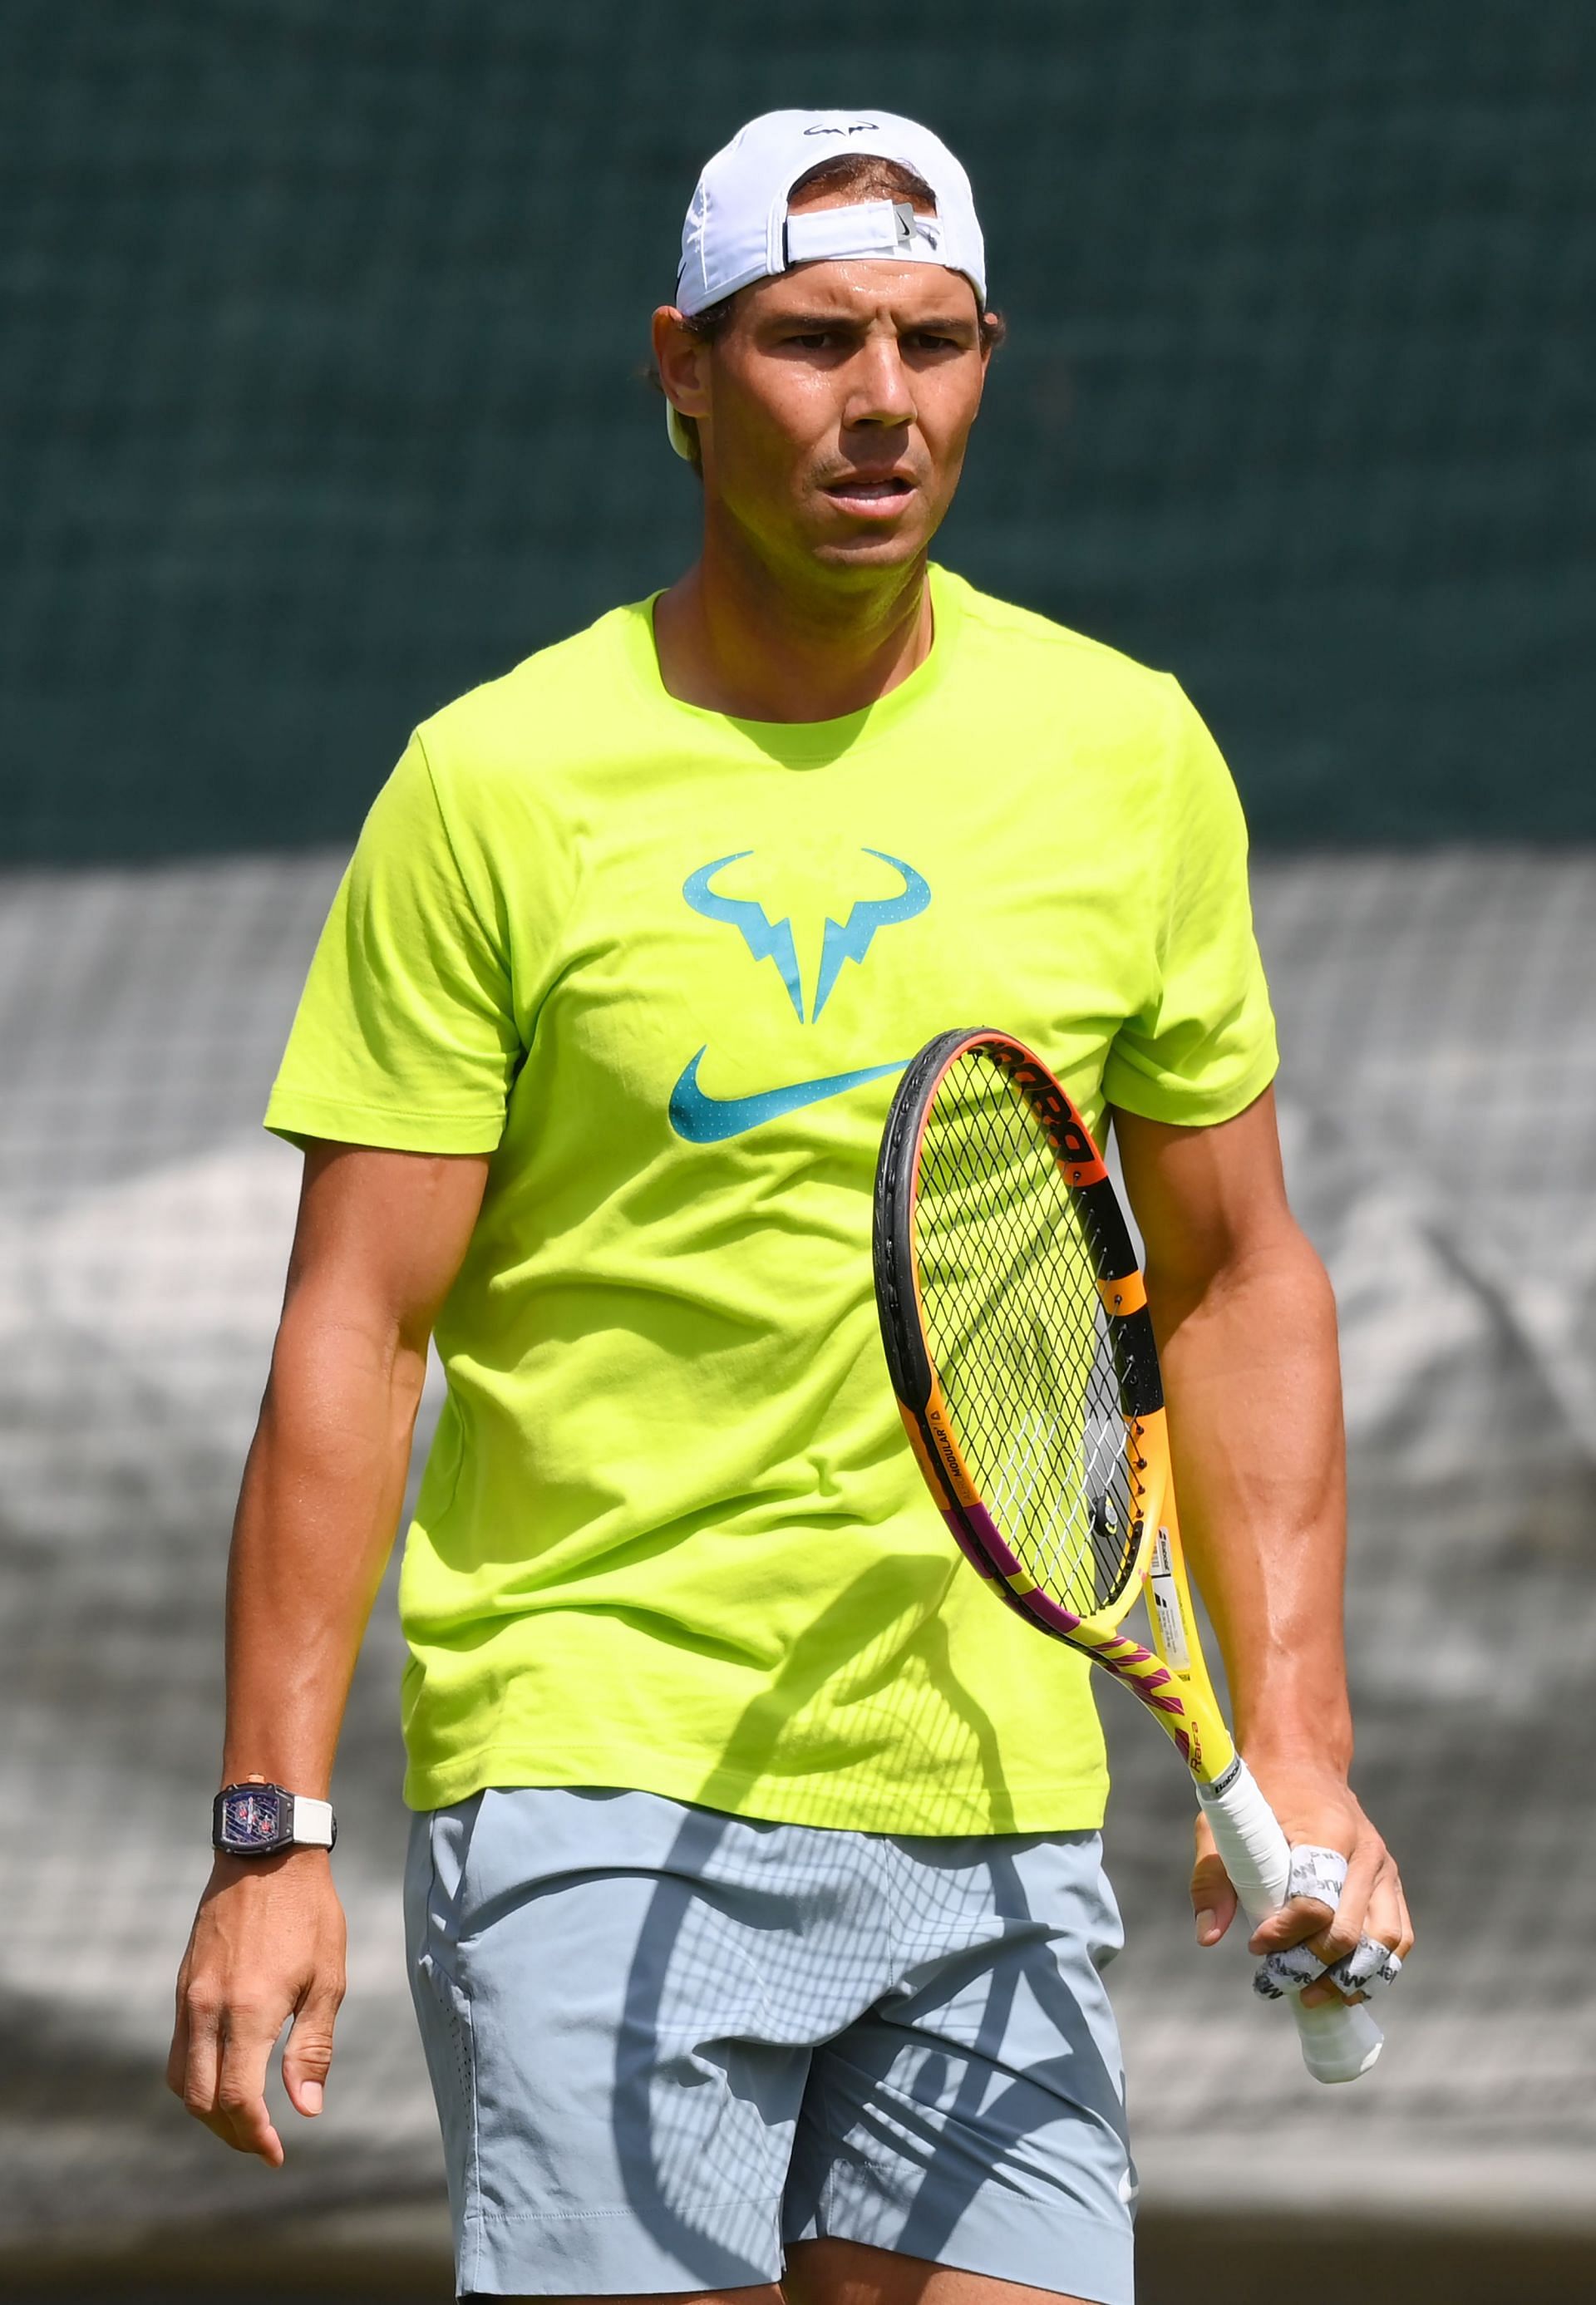 Rafael Nadal preparing for Wimbledon